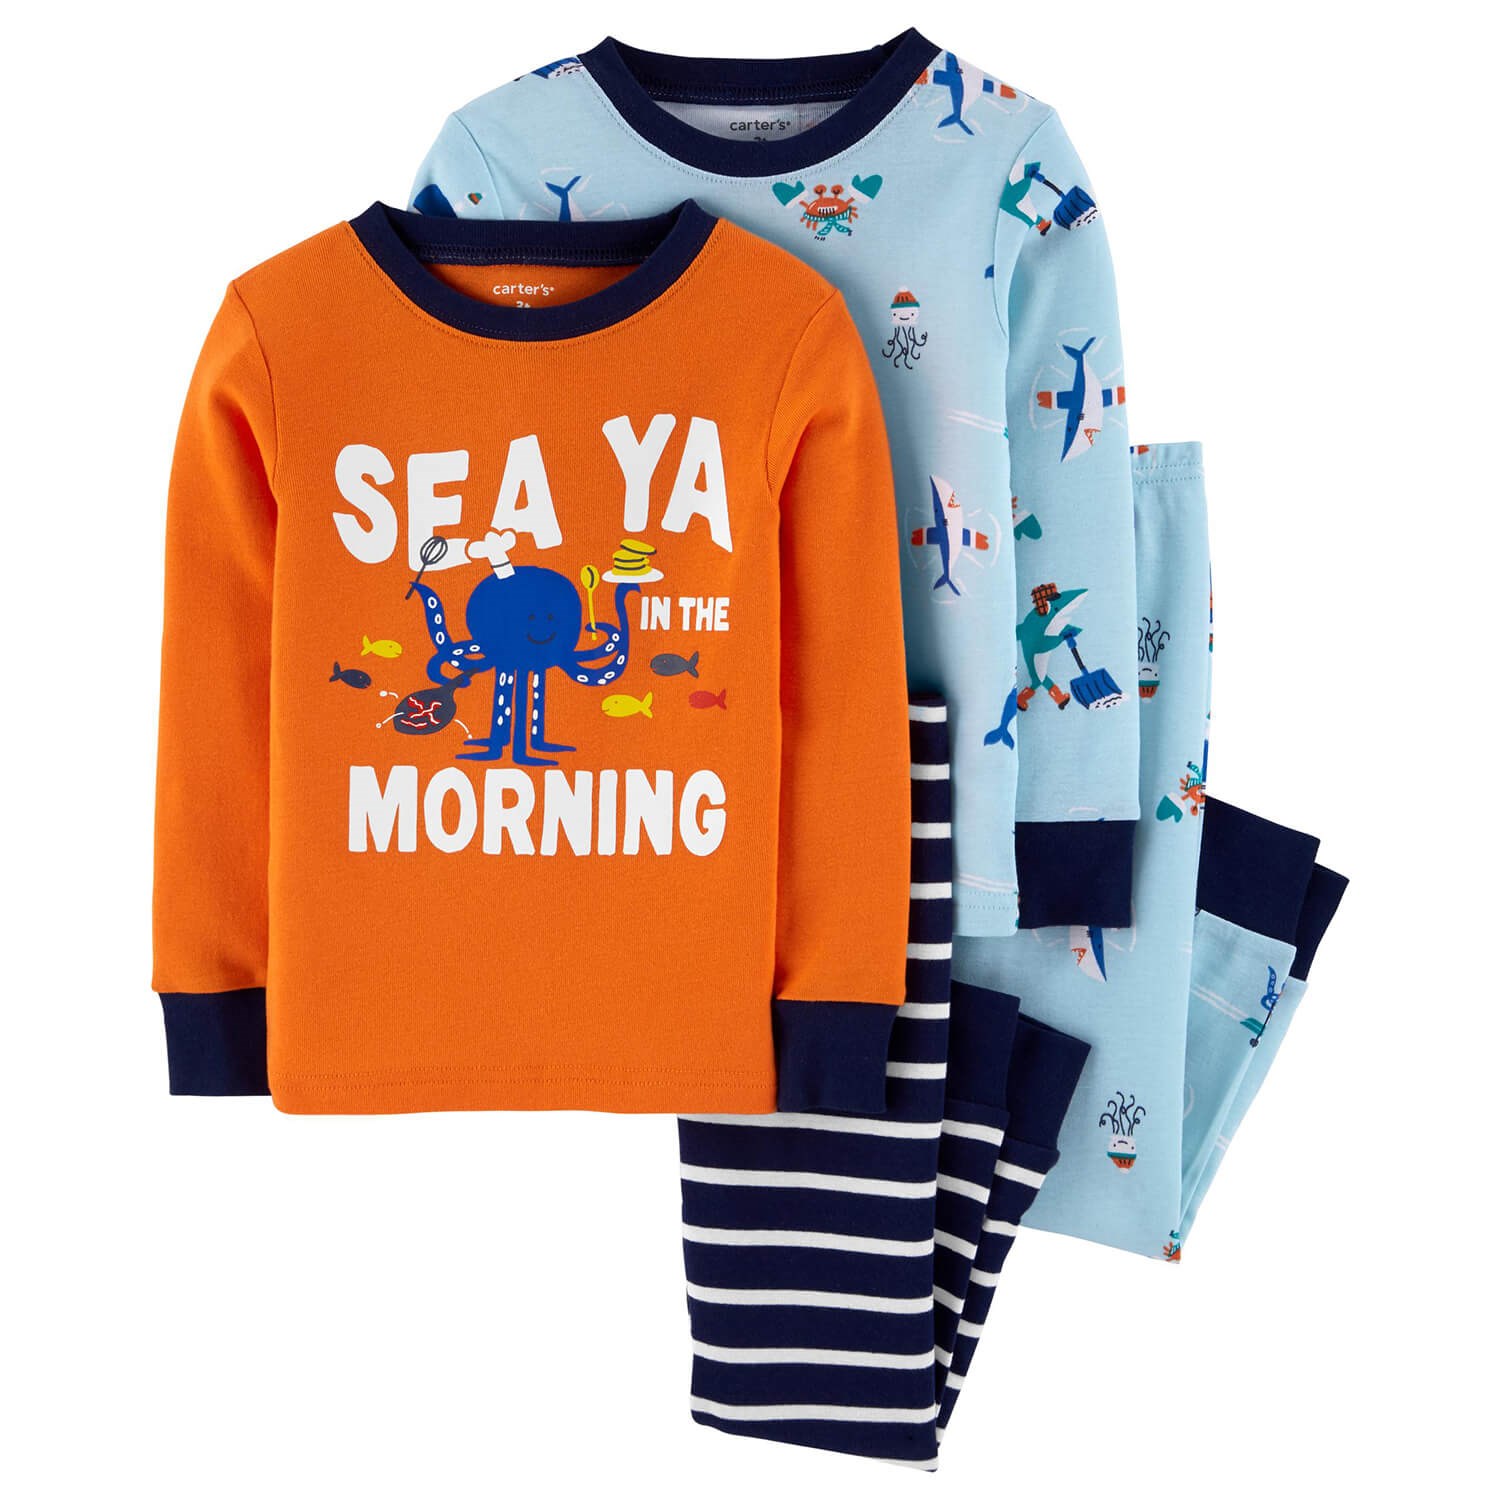 Carter's Deniz Hayvanları 4'lü Bebek Pijama Takımı Mavi-Turuncu